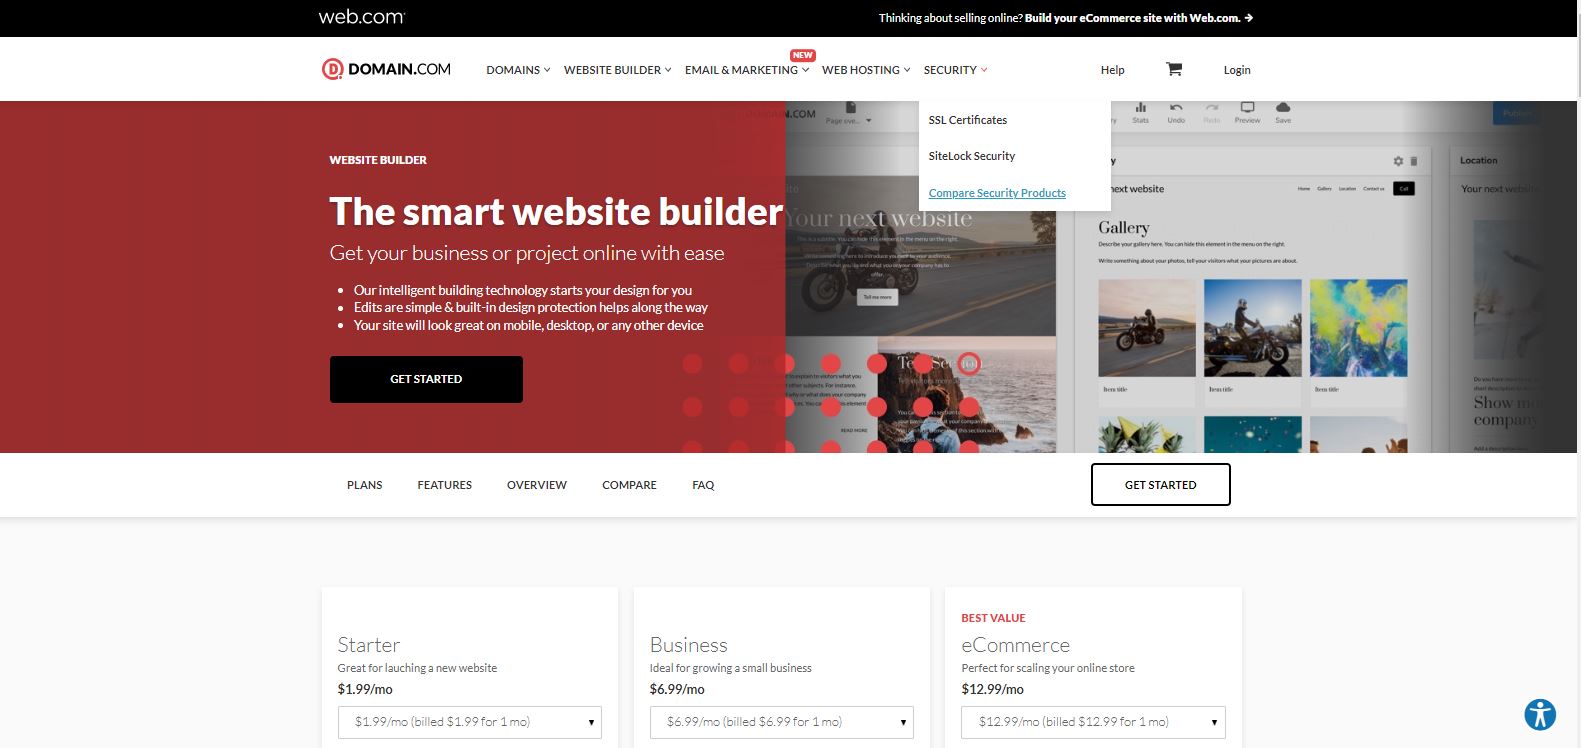 Domain.com Website Builder